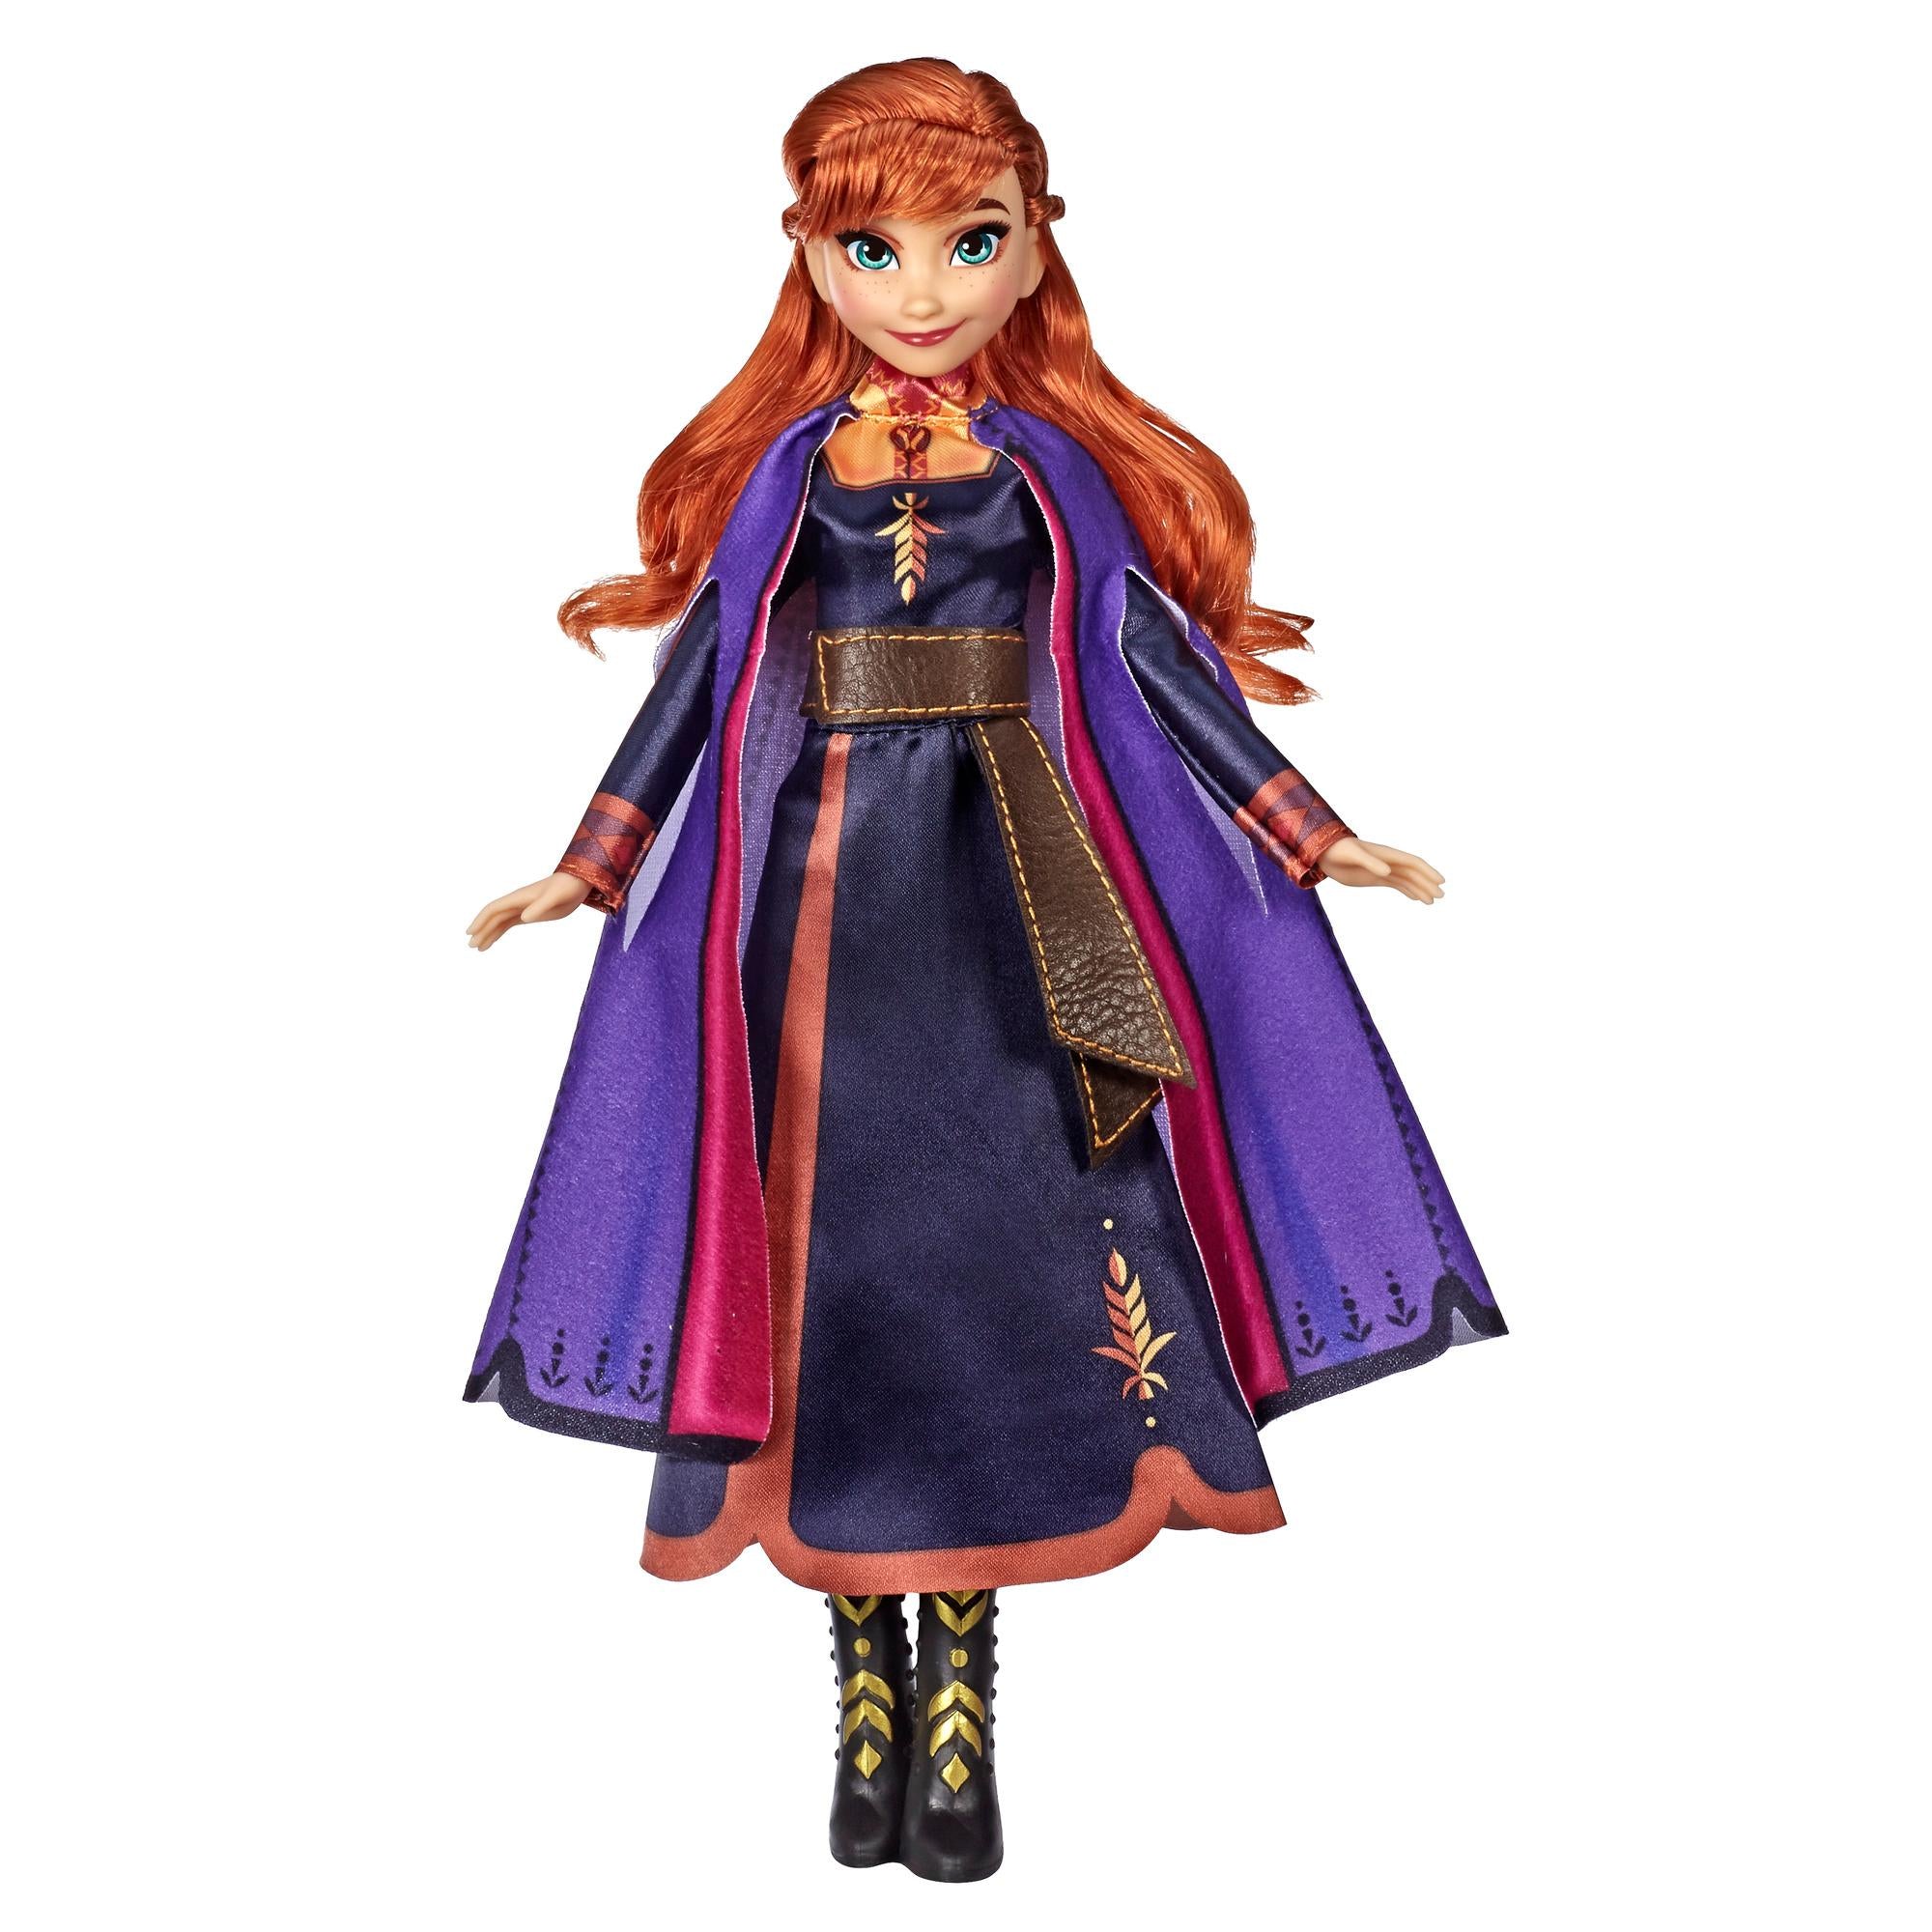 Frozen II: Singing Anna Doll